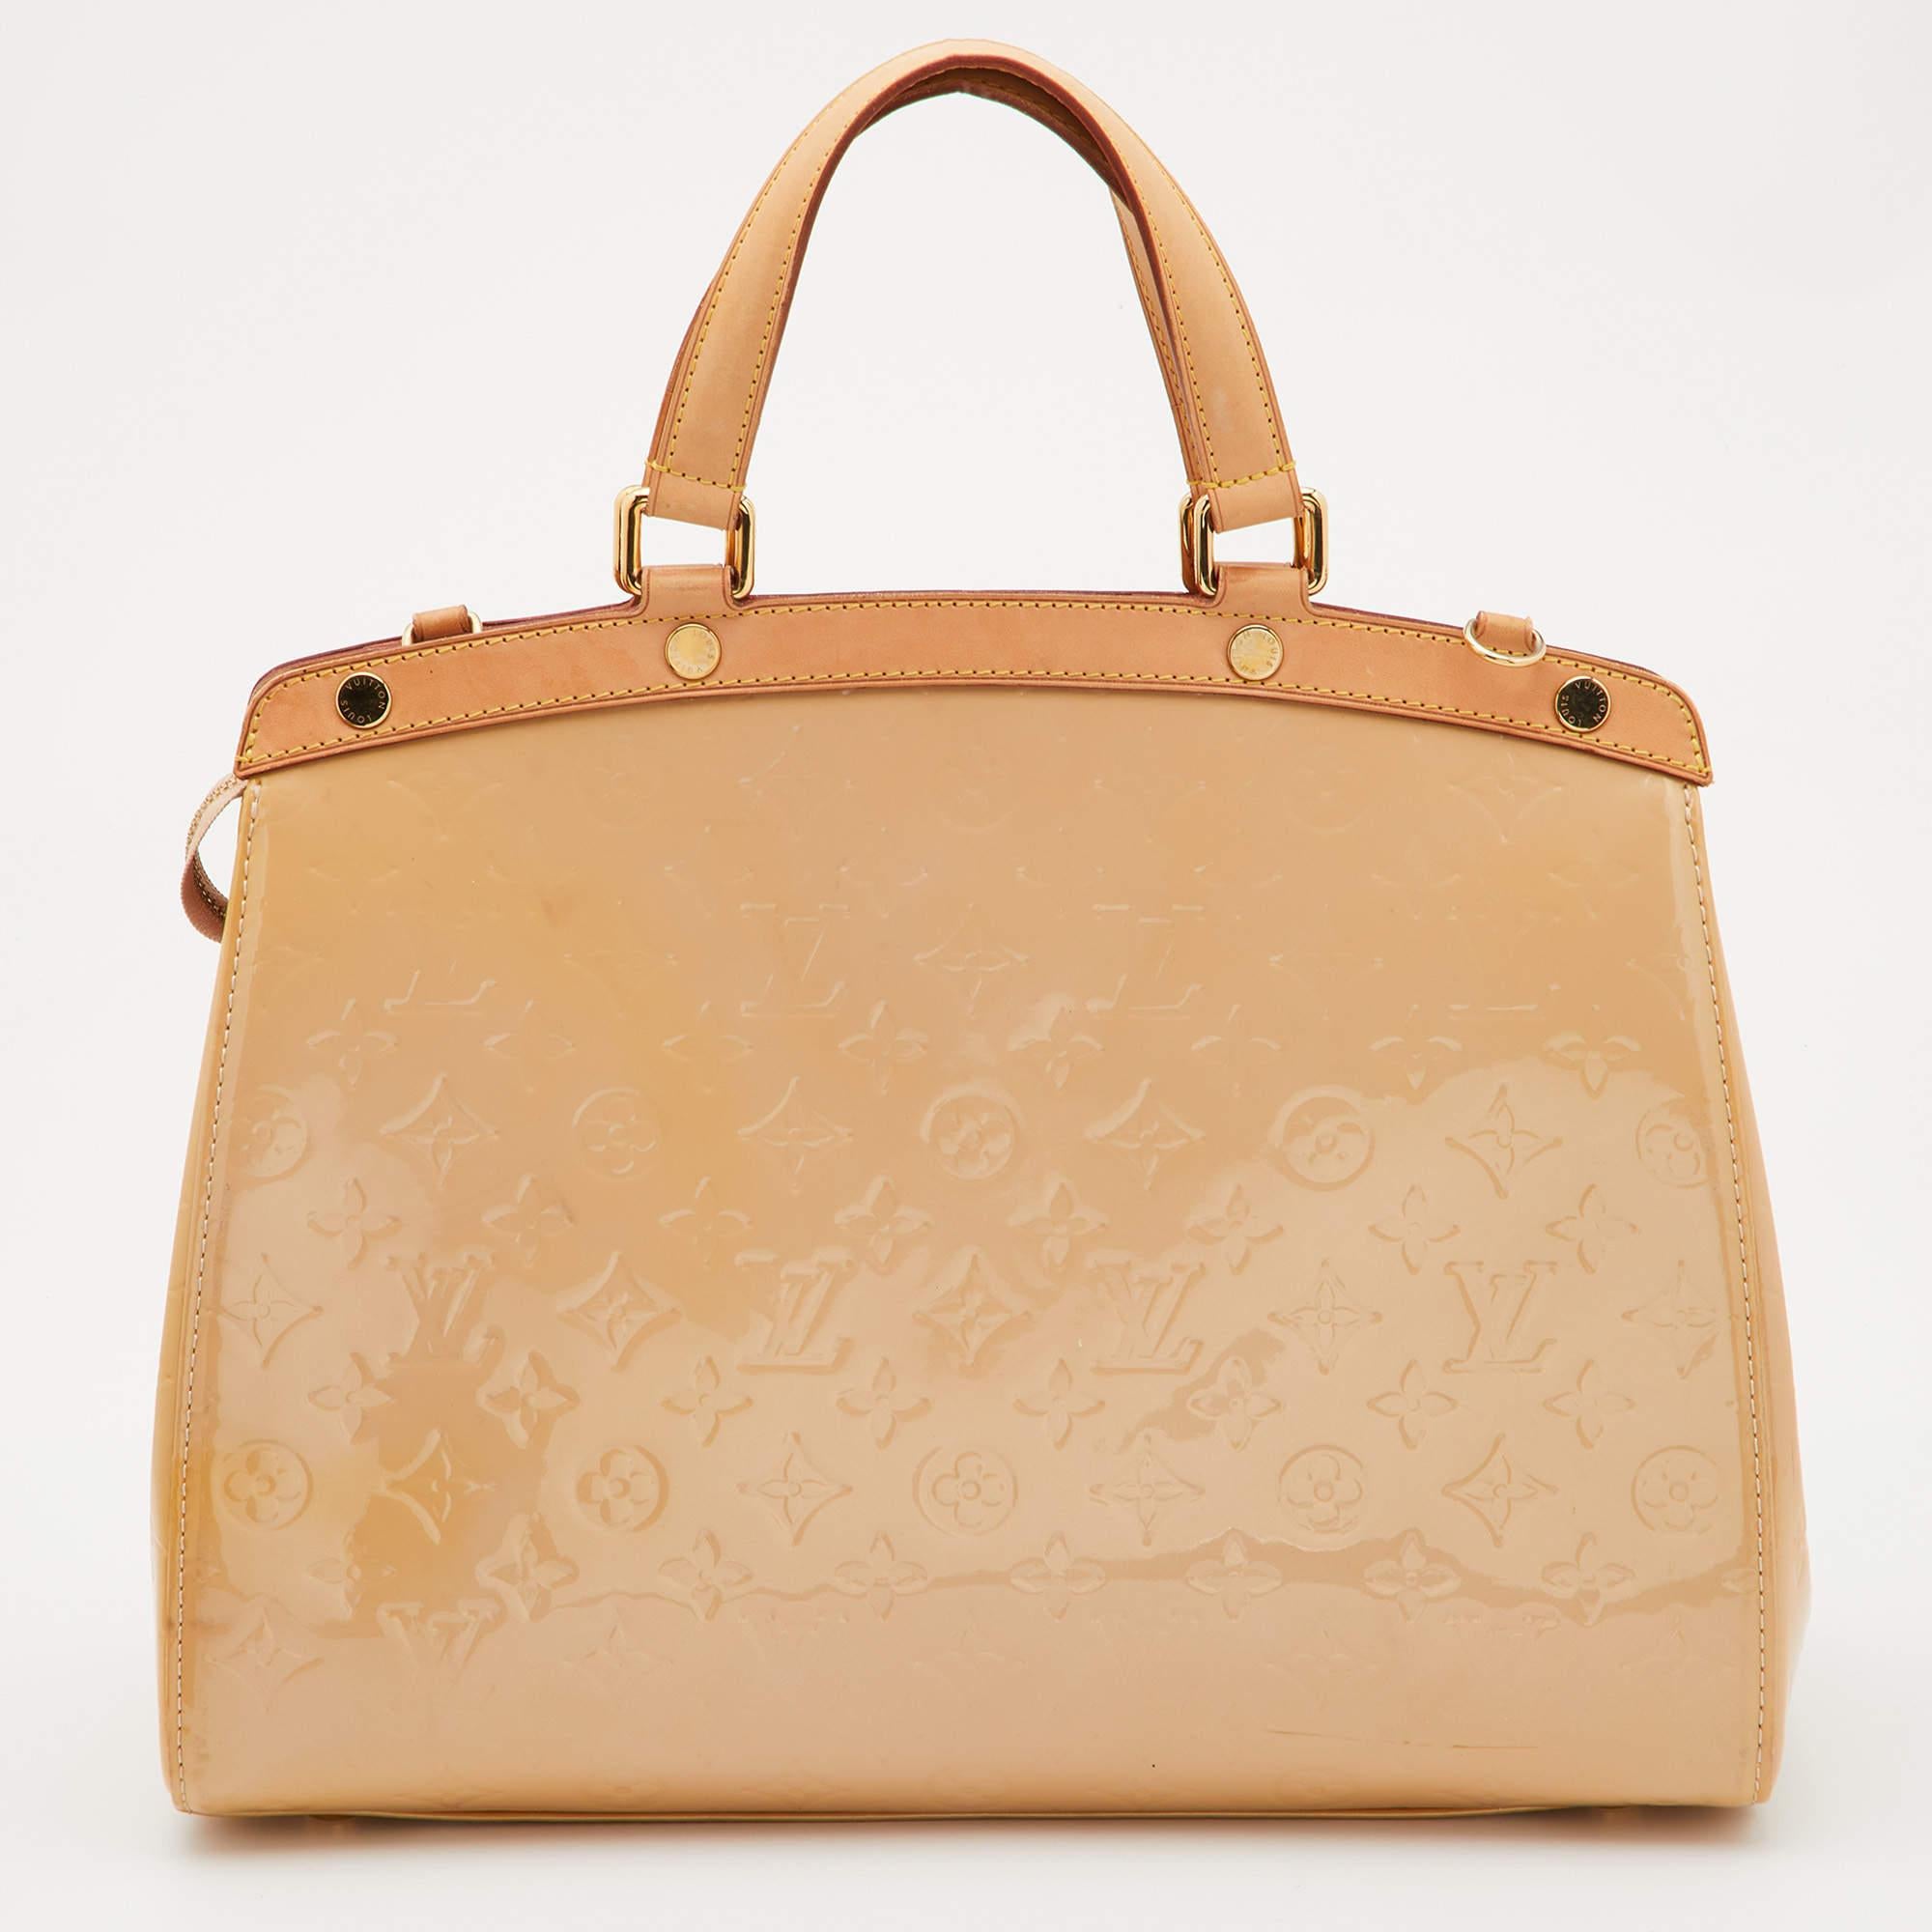 Die feminine Form der Brea von Louis Vuitton ist von der Arzttasche inspiriert. Die Tasche ist aus Monogram Vernis gefertigt und hat eine feine Oberfläche. Der Innenraum aus Stoff ist geräumig und wird mit einem Reißverschluss gesichert. Die Tasche